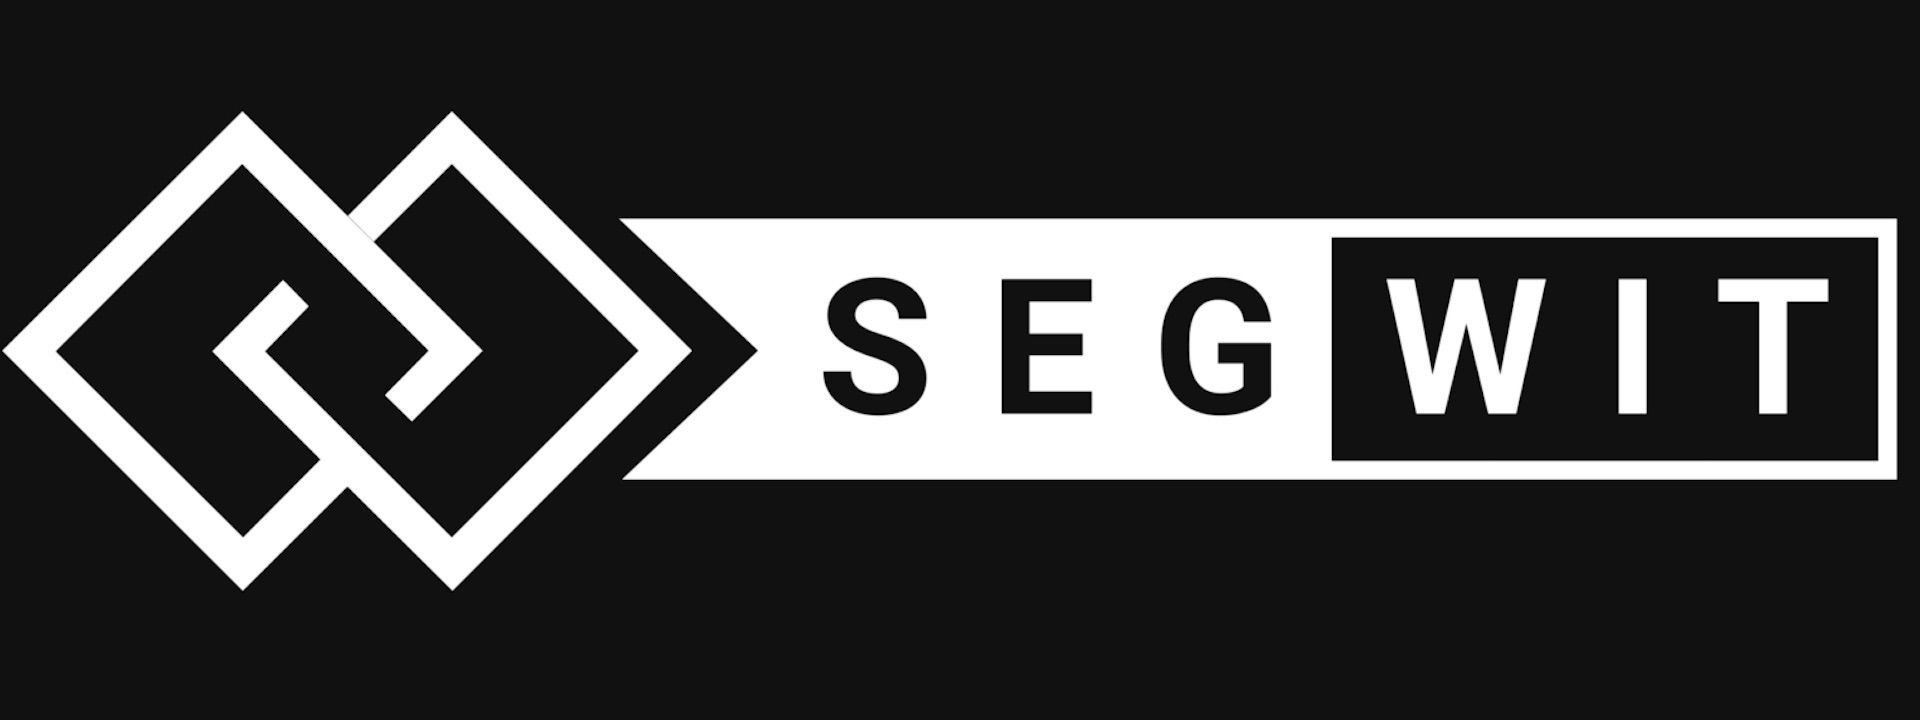 [Lớp học cryptocurrency] Bài 16: Segwit và Segwit2x là gì?